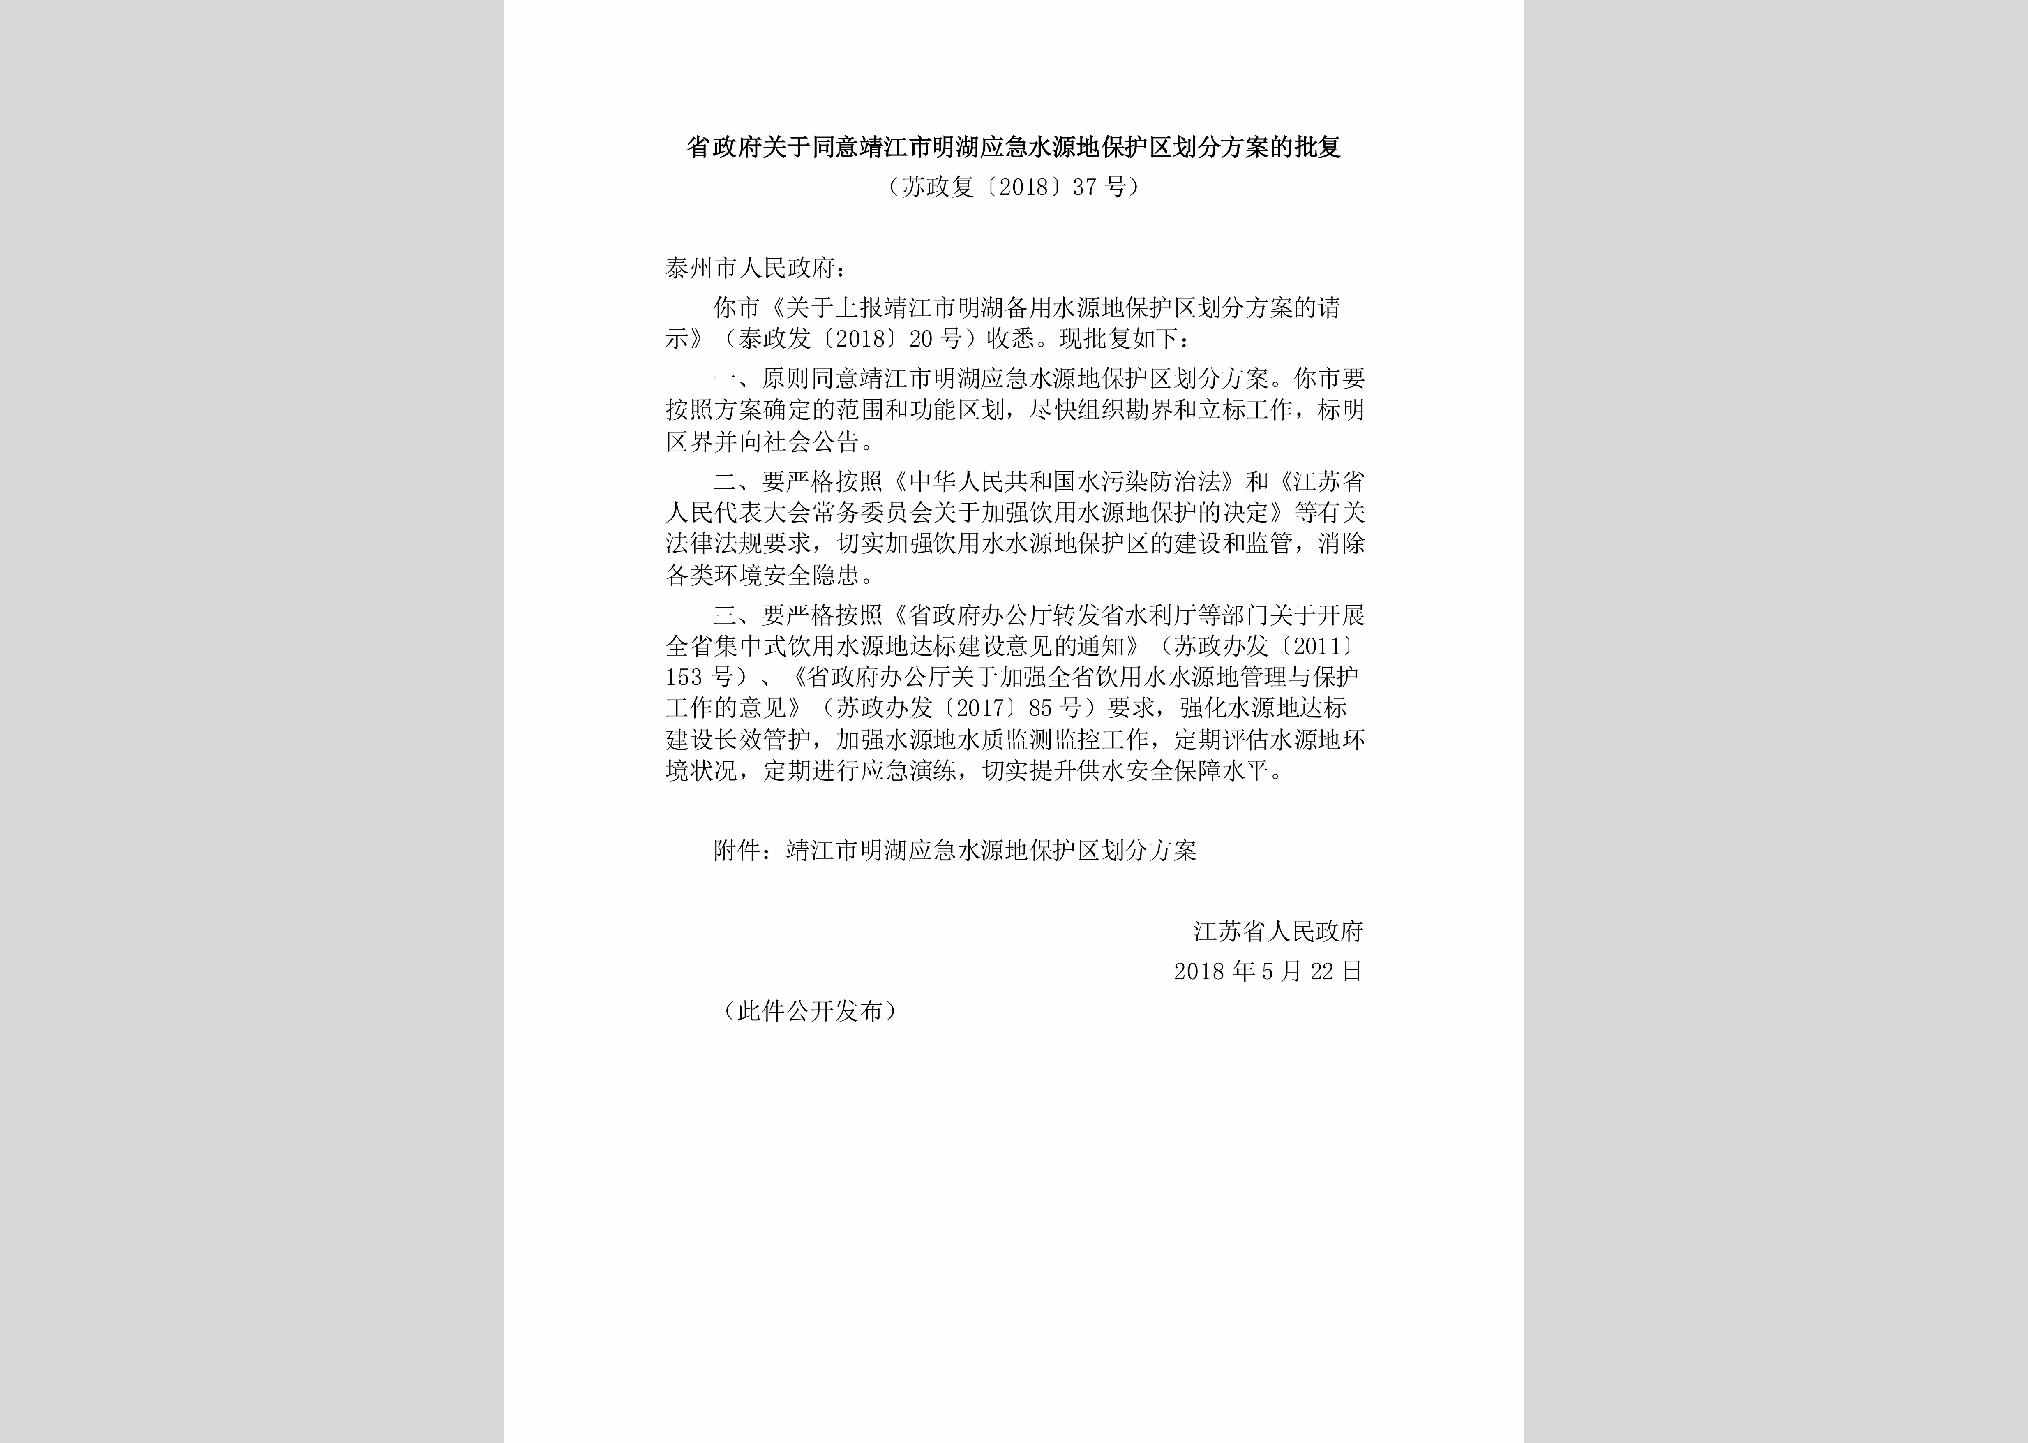 苏政复[2018]37号：省政府关于同意靖江市明湖应急水源地保护区划分方案的批复